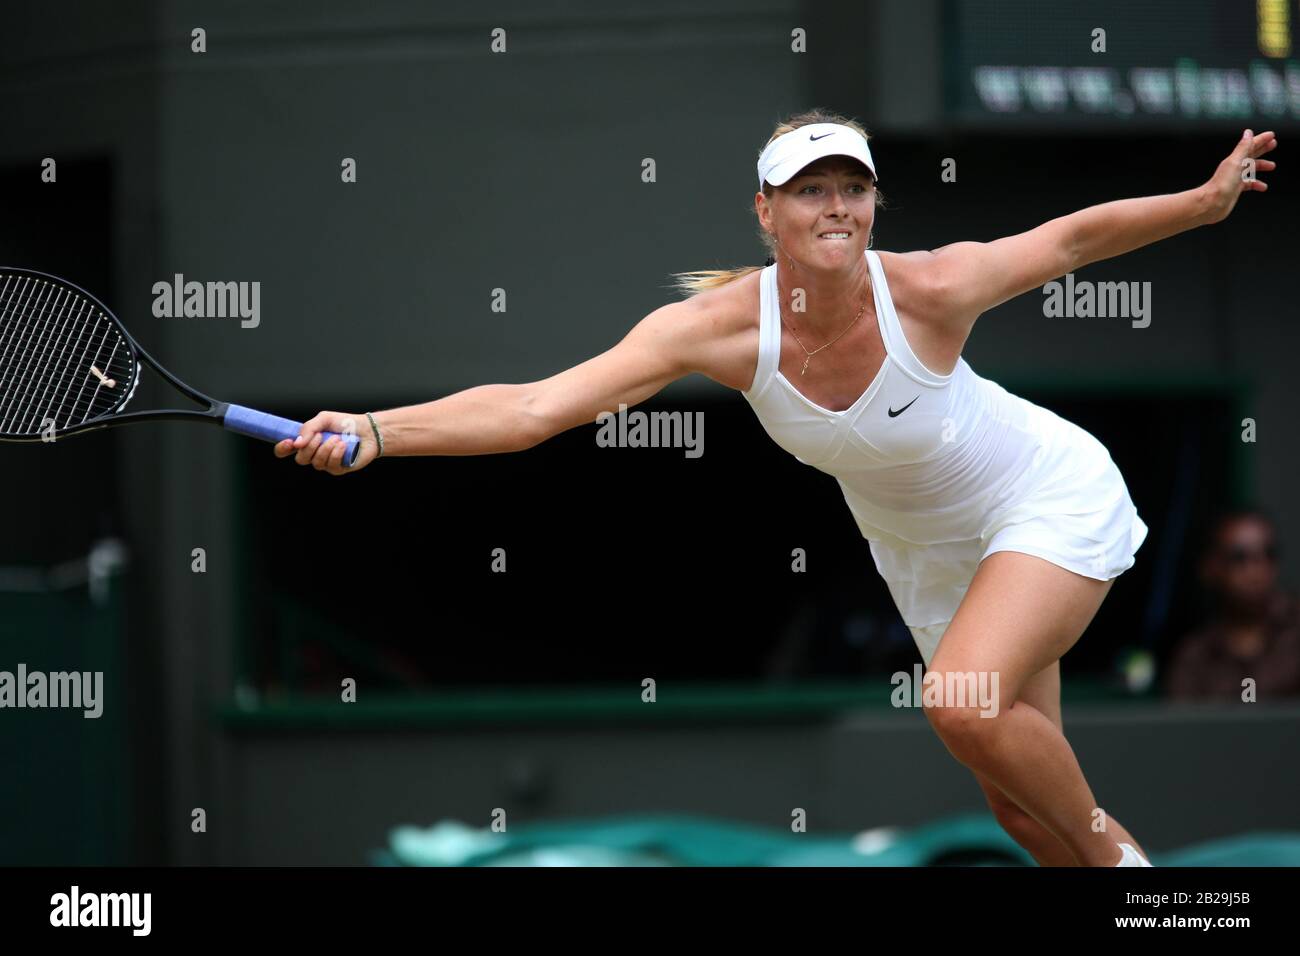 24 juin 2010 : Wimbledon, Royaume-Uni : Maria Sharapova en action lors de son second match contre Joana Raluca Olaru, de Roumanie, lors des championnats de Wimbledon de 2010 Banque D'Images